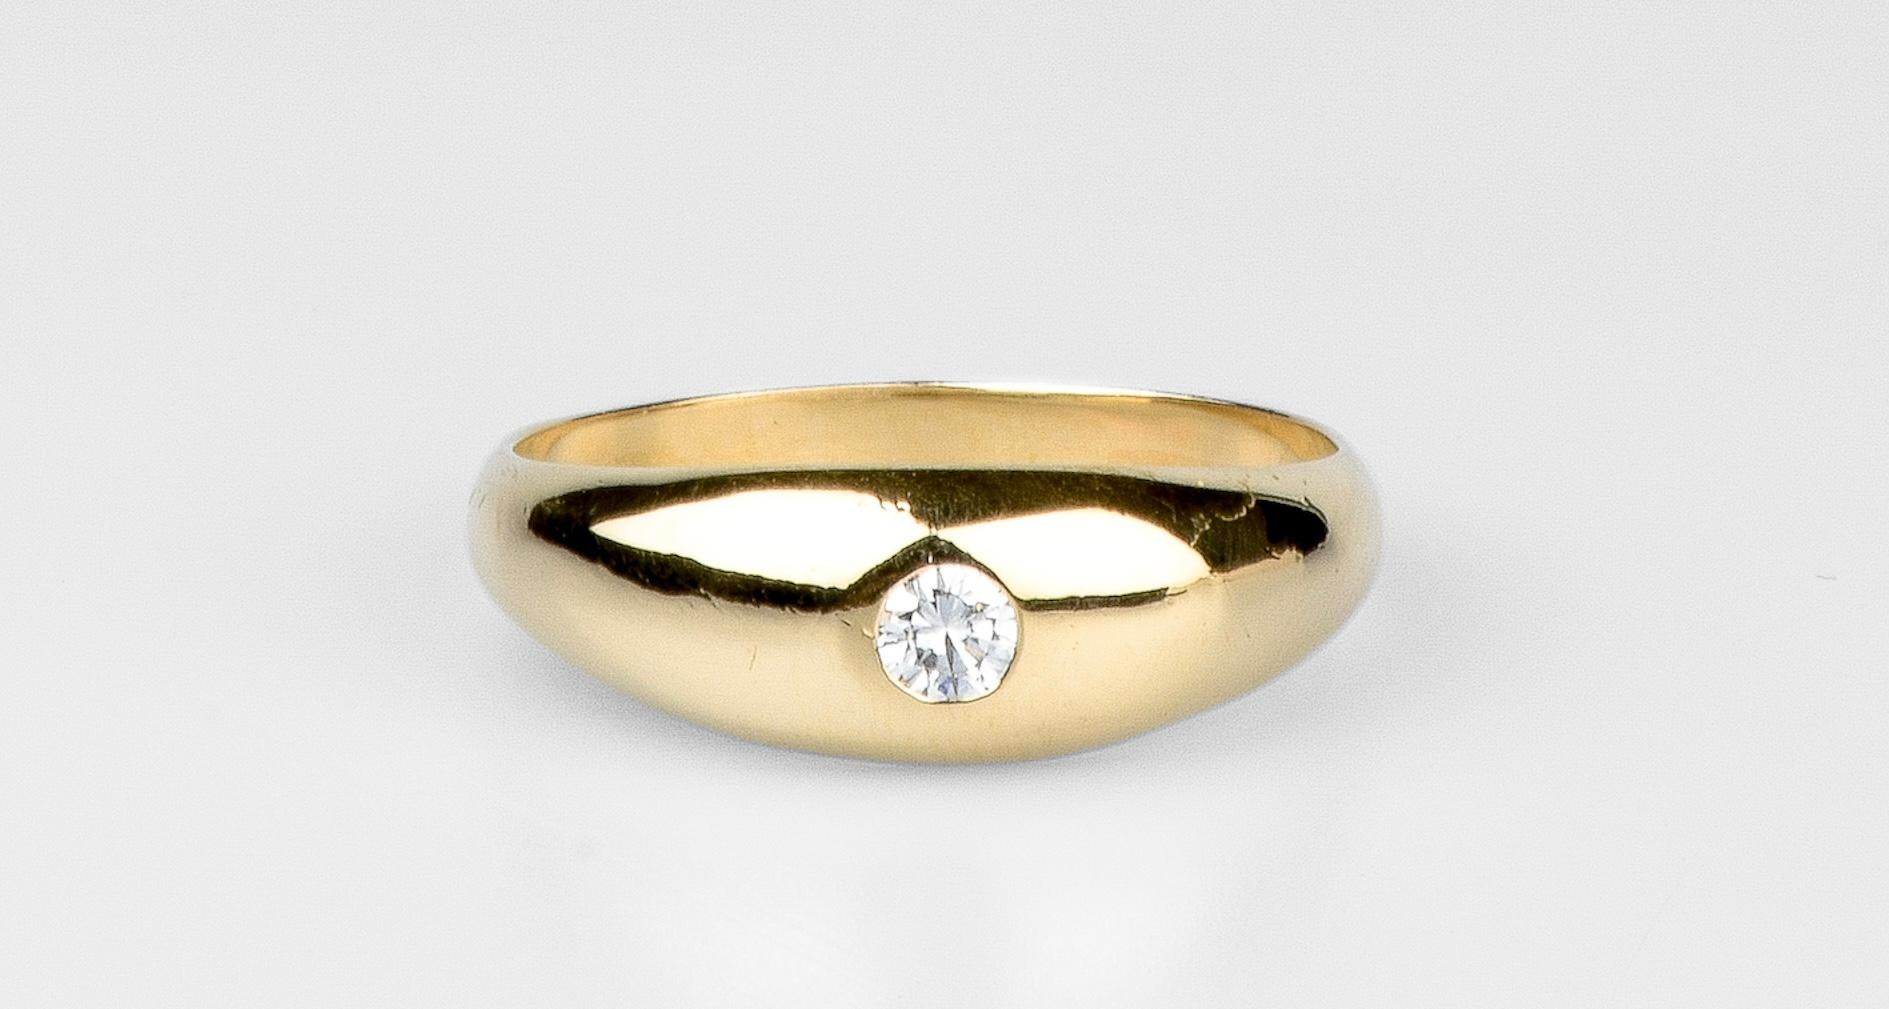 ring aus 18 Karat Gelbgold mit 1 runden Diamanten im Brillantschliff mit einem Gewicht von 0,085 Karat. 

Qualität des Diamanten:
Farbe: H
Klarheit: VS2

Gewicht: 3,70 g. 

Größe: EU: 62 - ESP/IT: 22 - US: 10

Abmessungen: 0.75 cm
Breite des Rings: